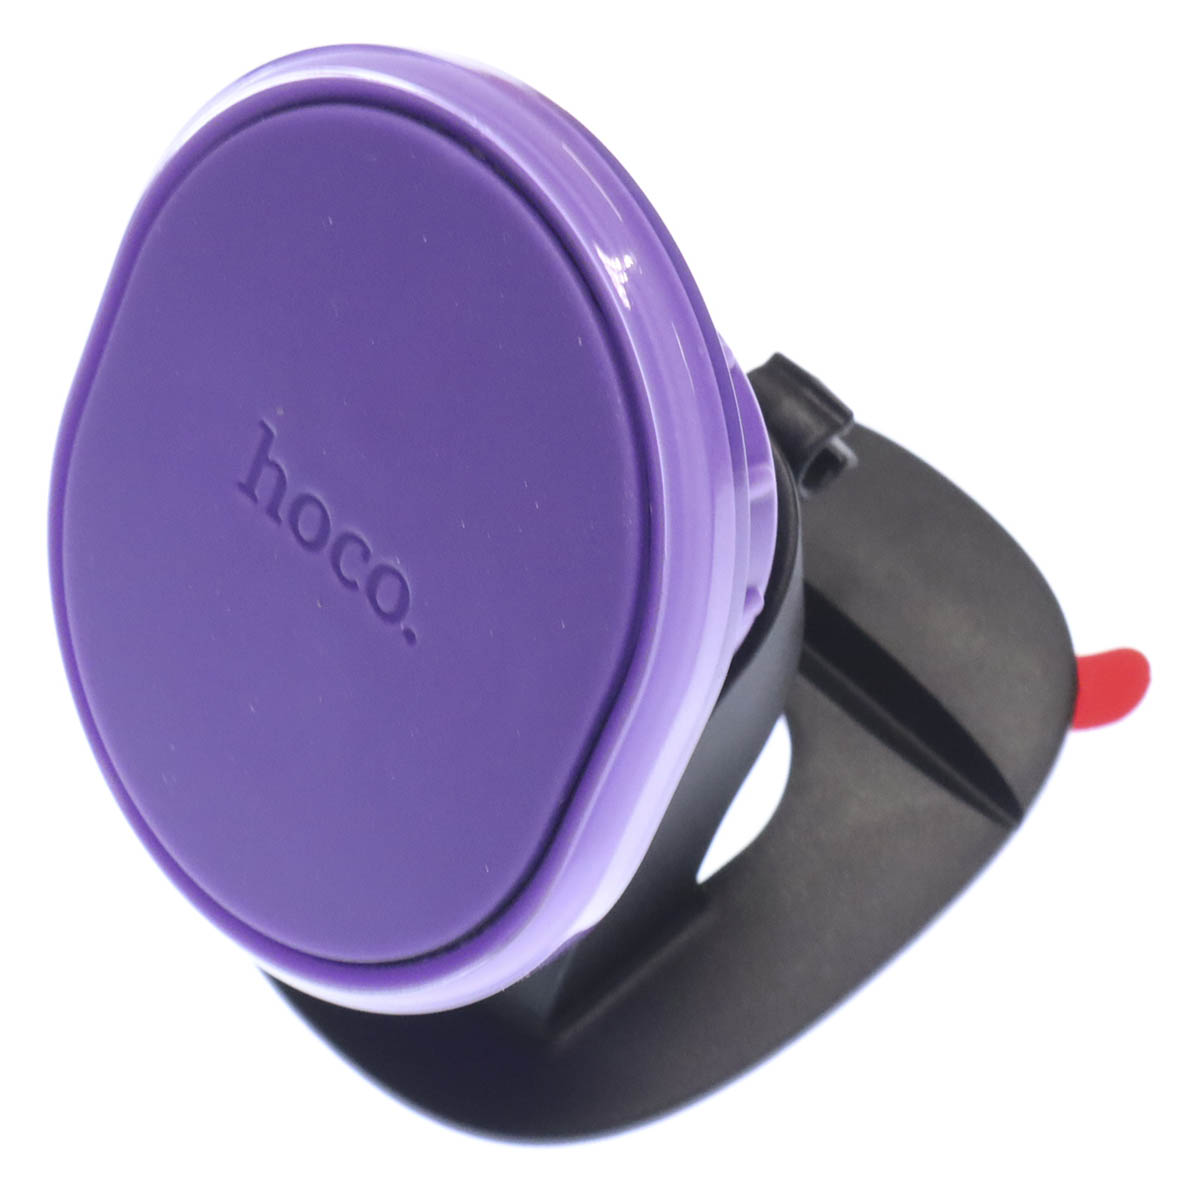 Автомобильный магнитный держатель HOCO H2 Crystal magnetic car holder для смартфона, на панель, цвет фиолетовый